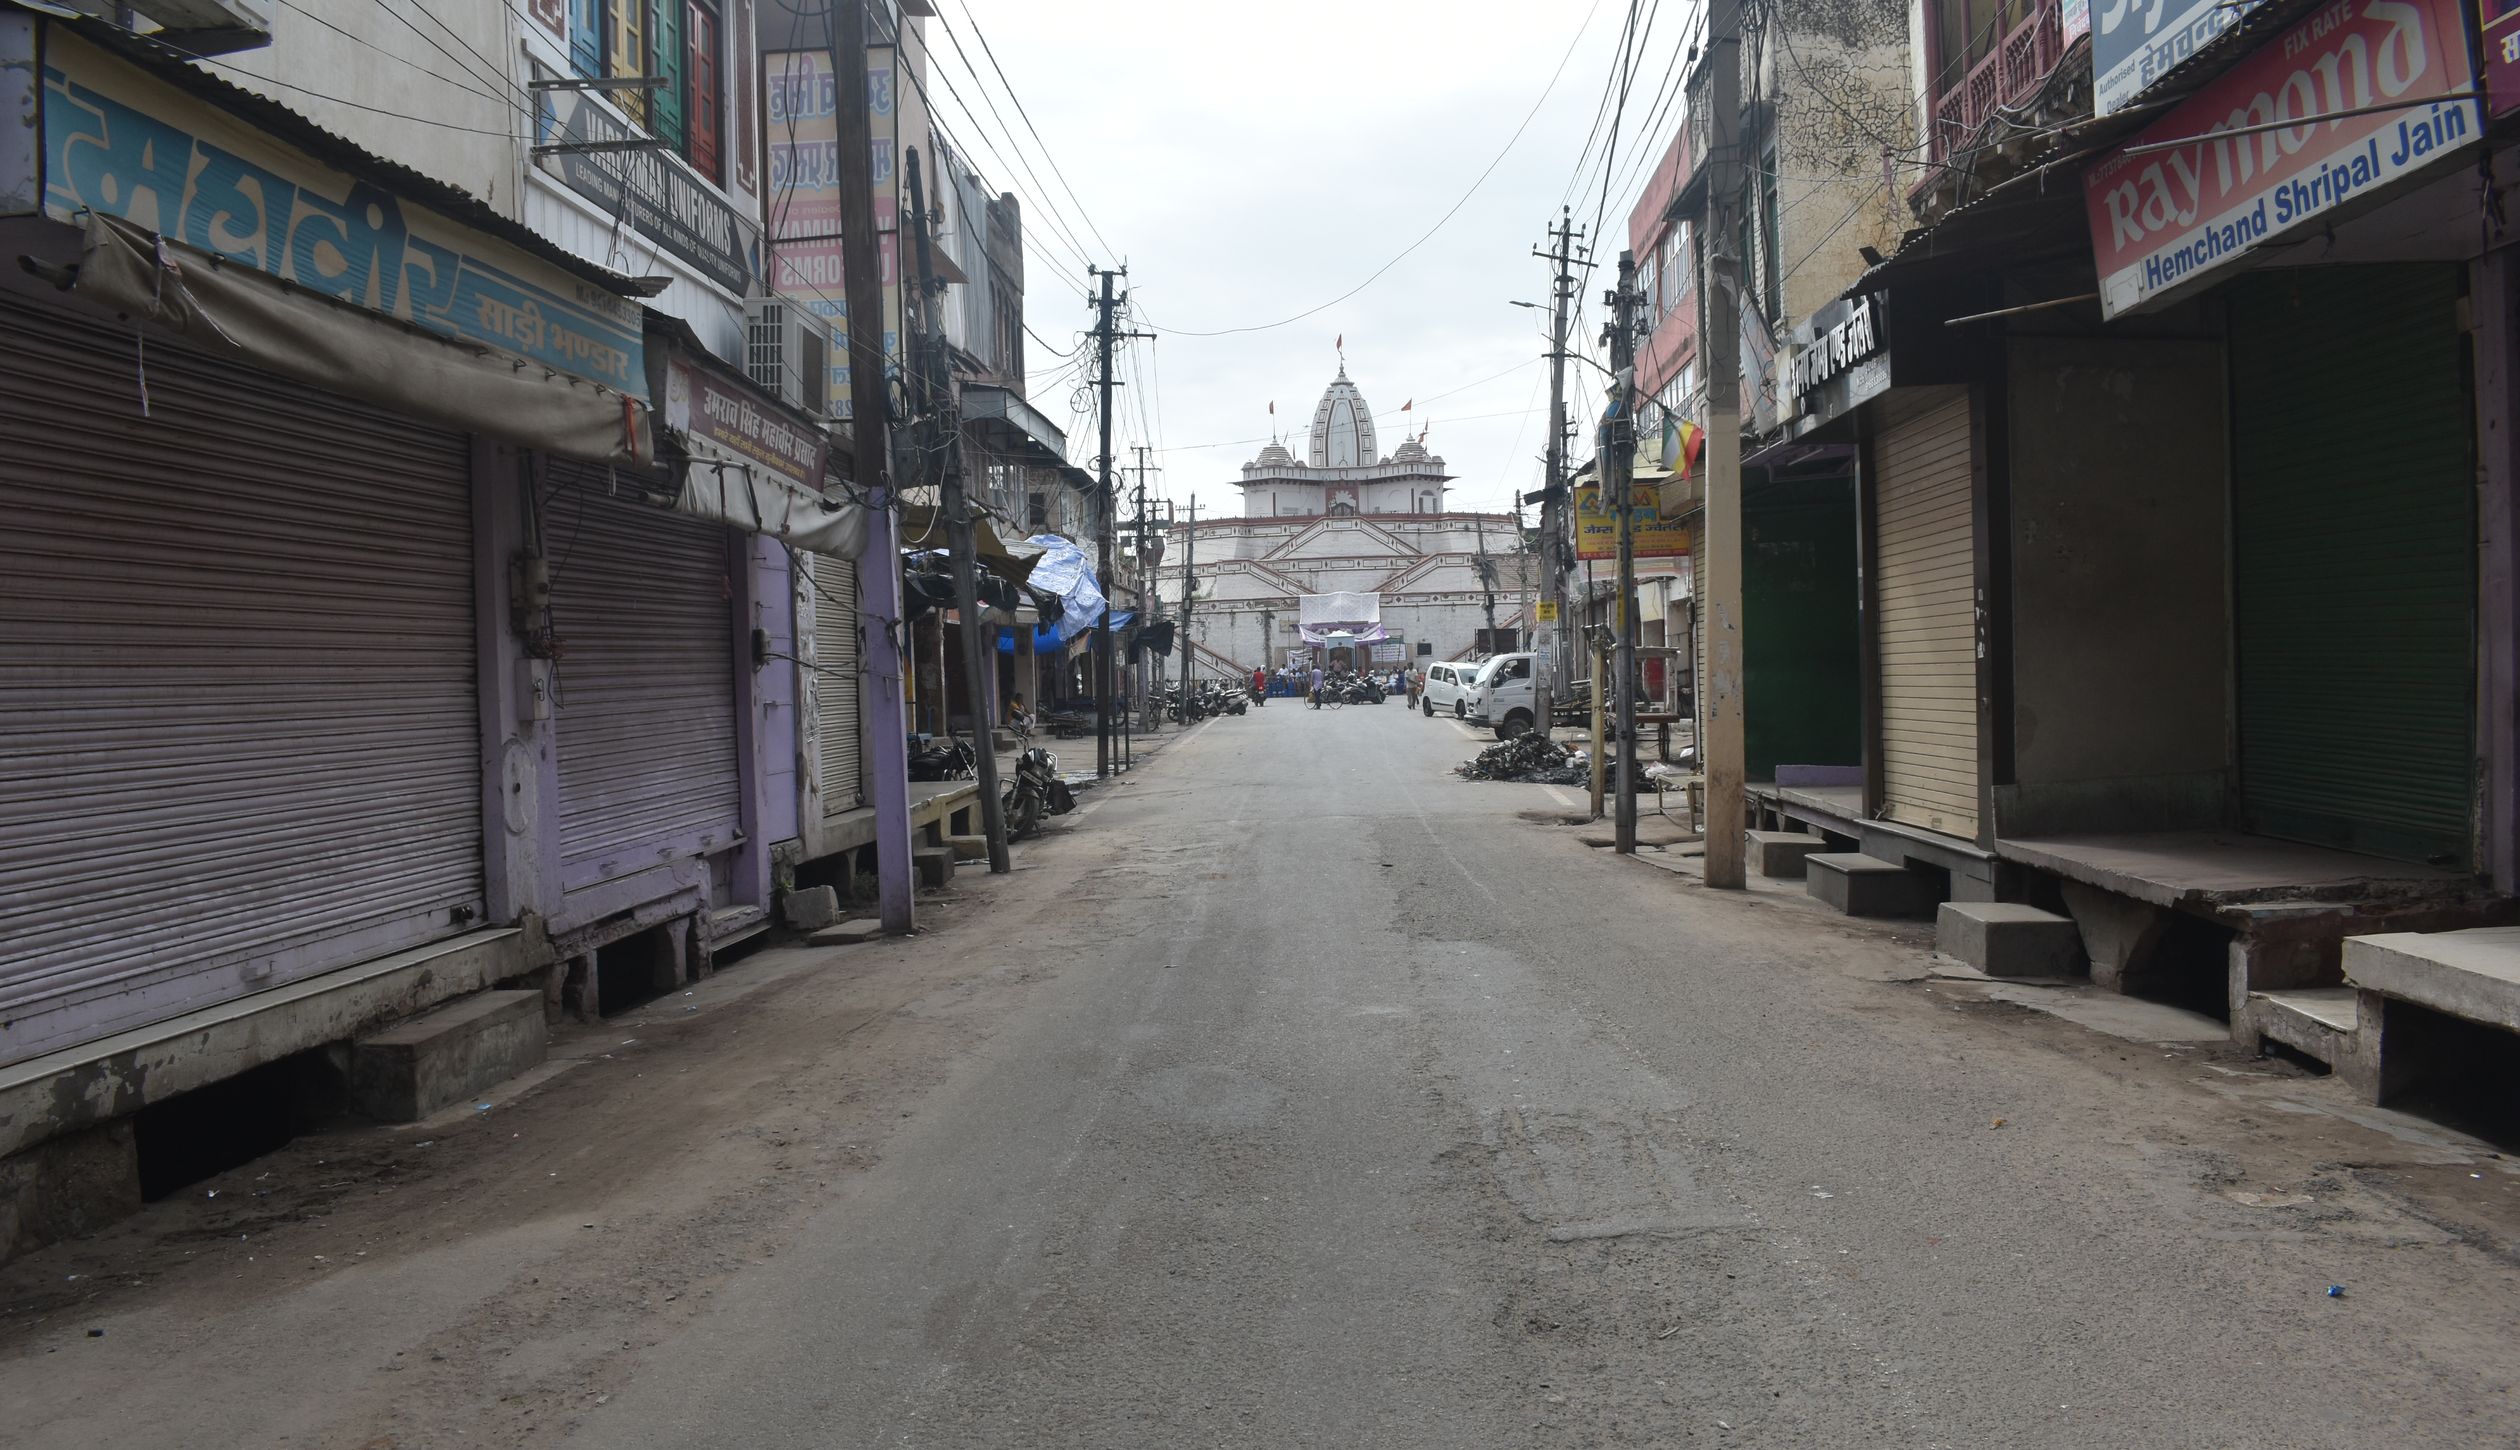 उदयपुर की घटना के विरोध में अलवर रहा बंद, कई कस्बों में नहीं खुले बाजार